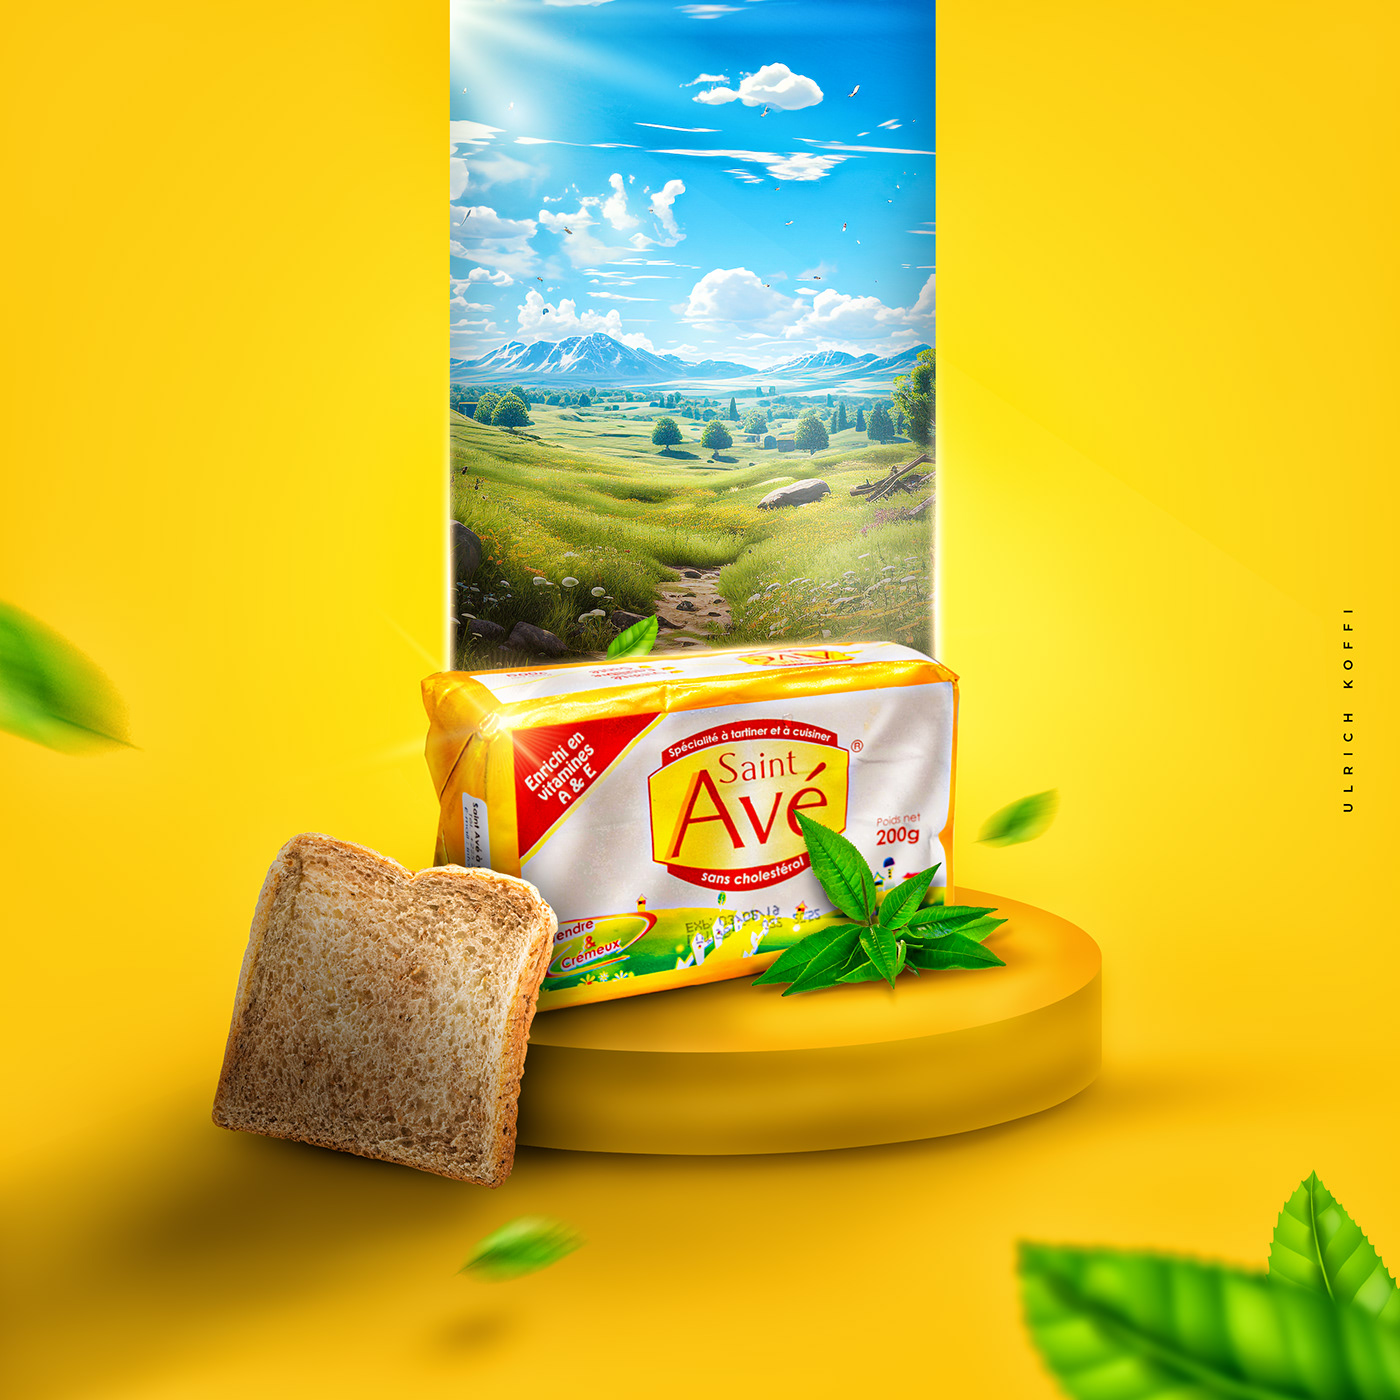 butter red Food  Mockup manipulation product design  design Advertising  marketing   Digital Art 